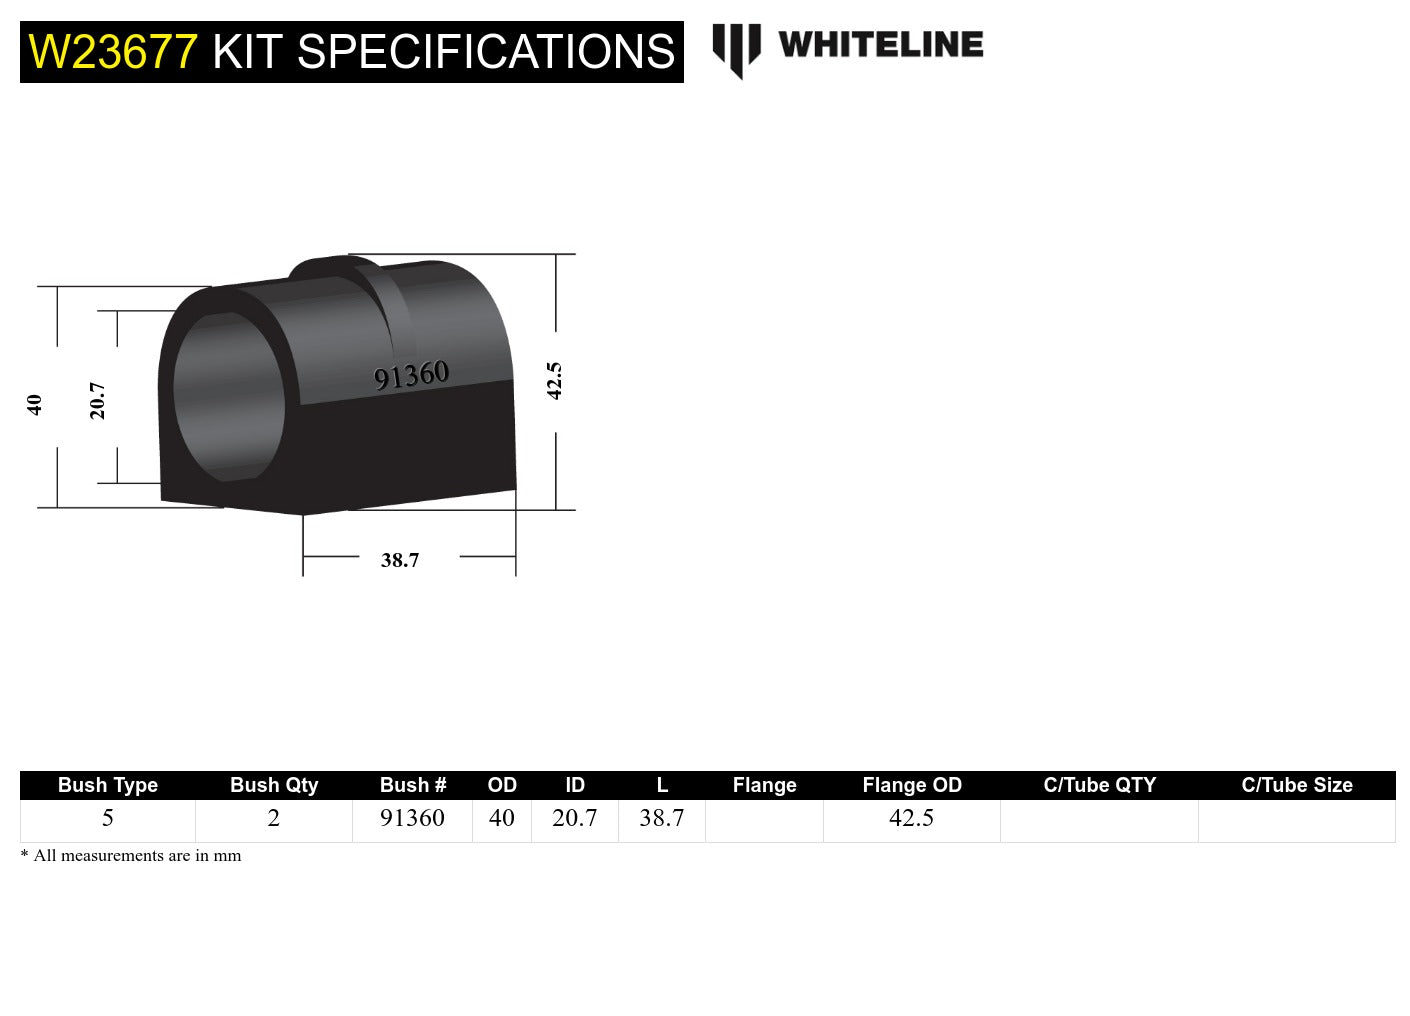 Rear Sway Bar - Mount Bushing Kit (20.7mm)